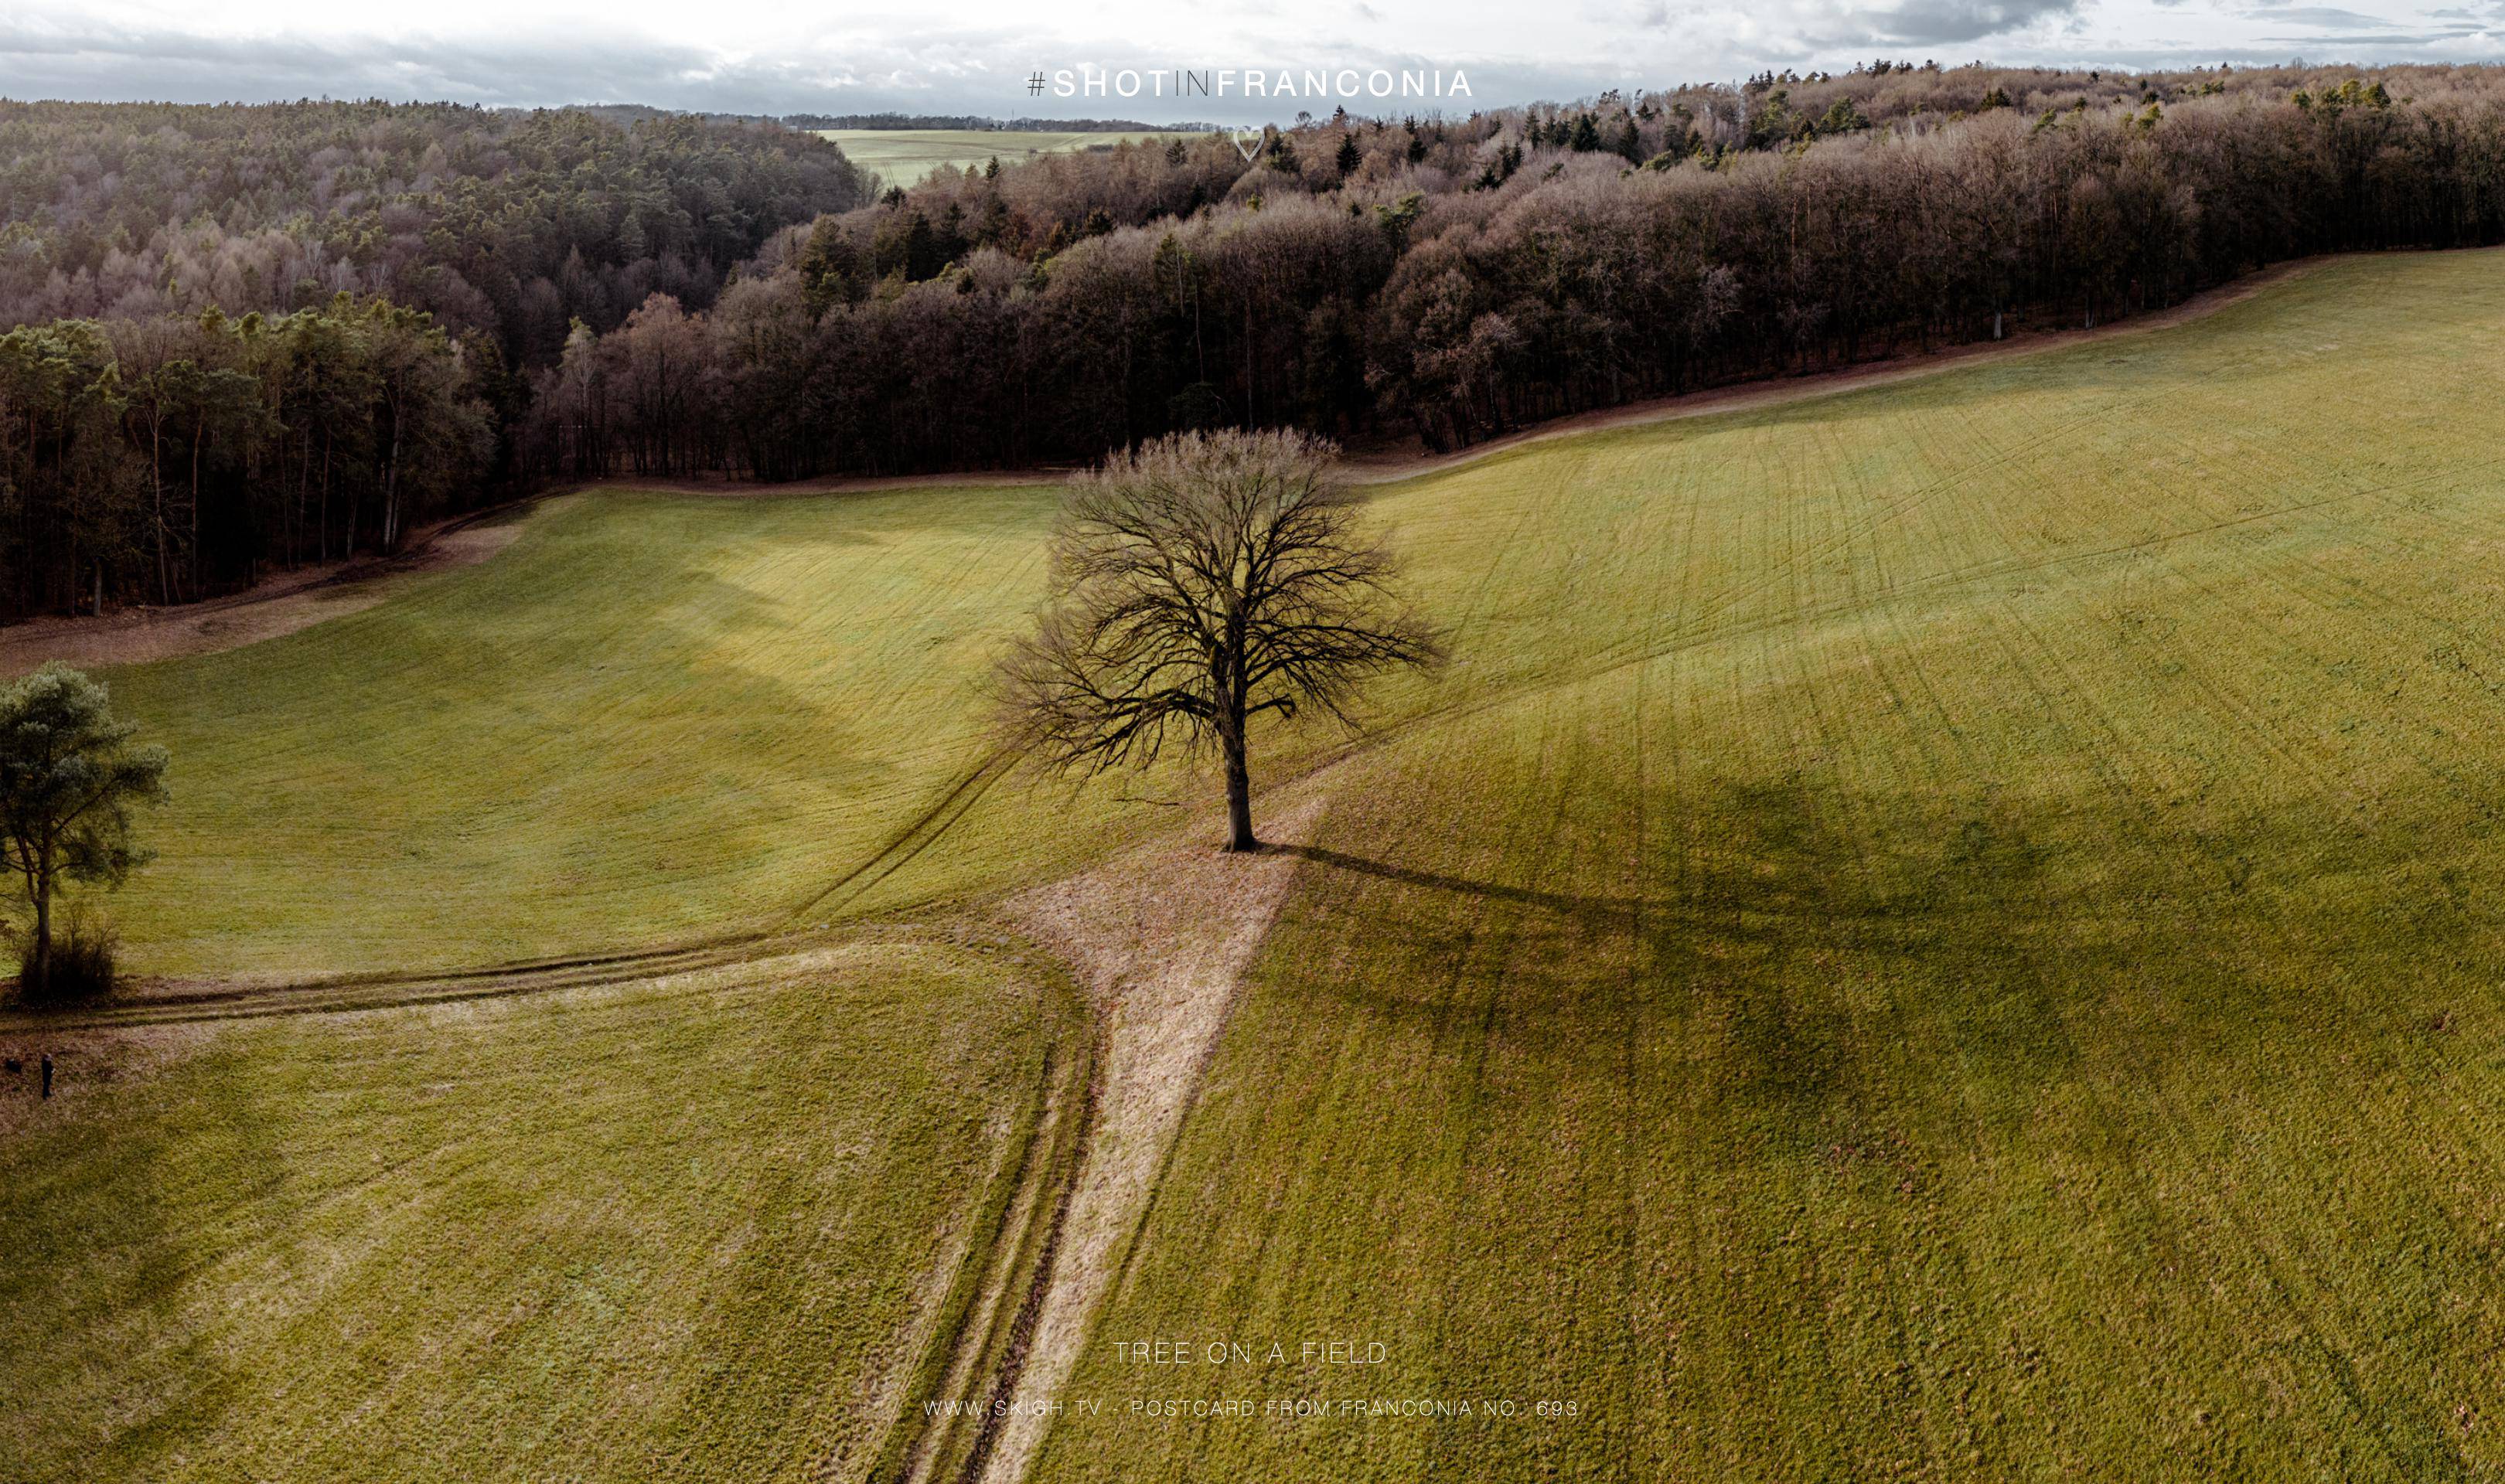 Tree on a field